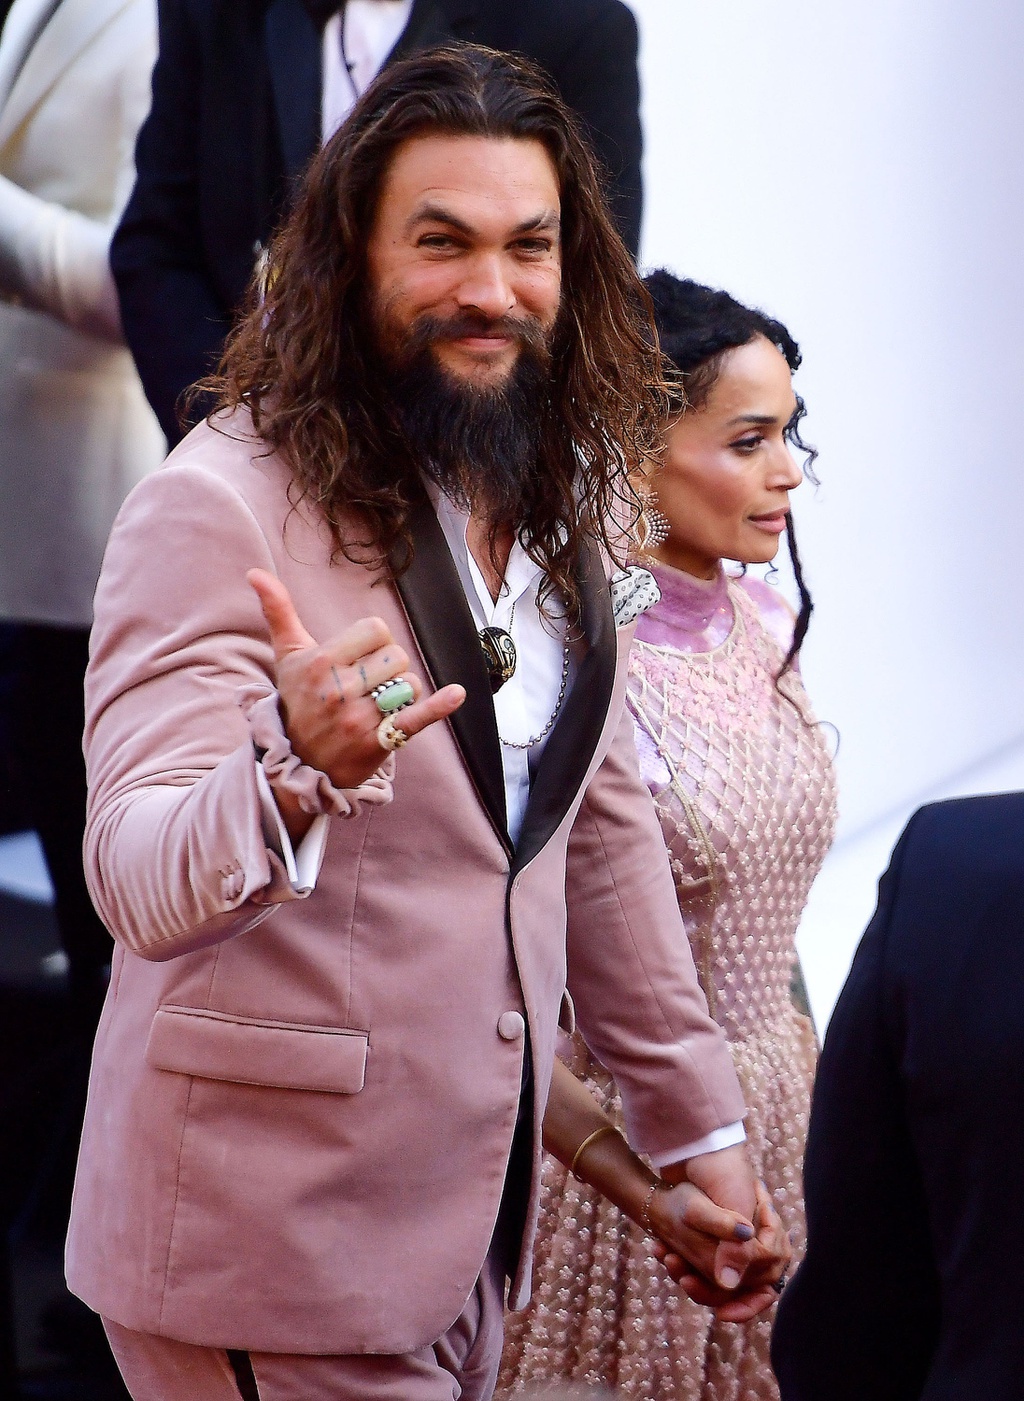 Jason và vợ trên thảm đỏ Oscar 2019 (Ảnh: Getty Image).